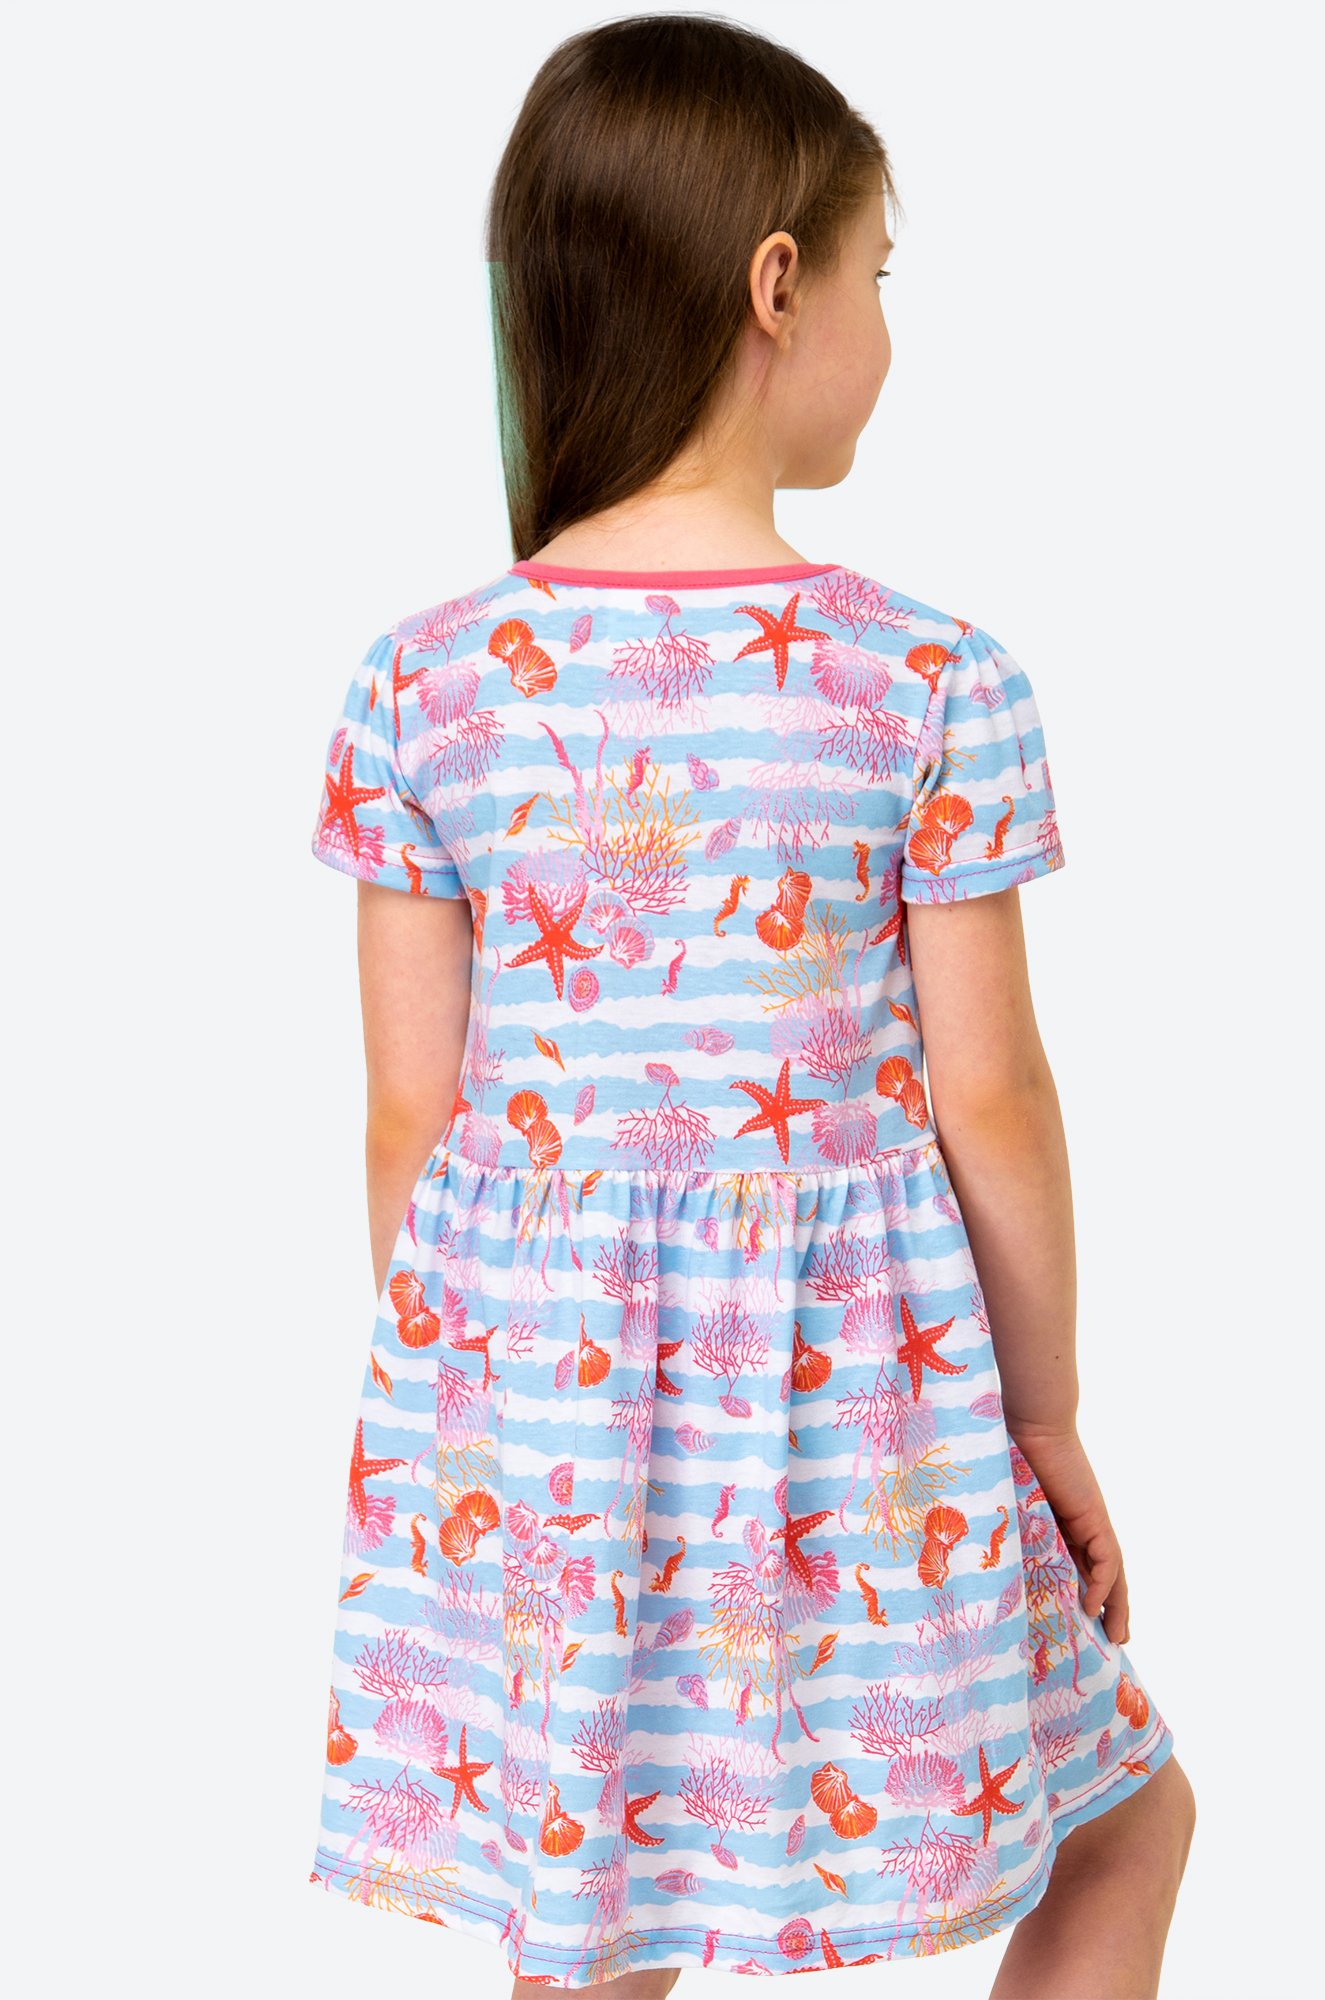 Летнее хлопковое платье для девочки Happy Fox